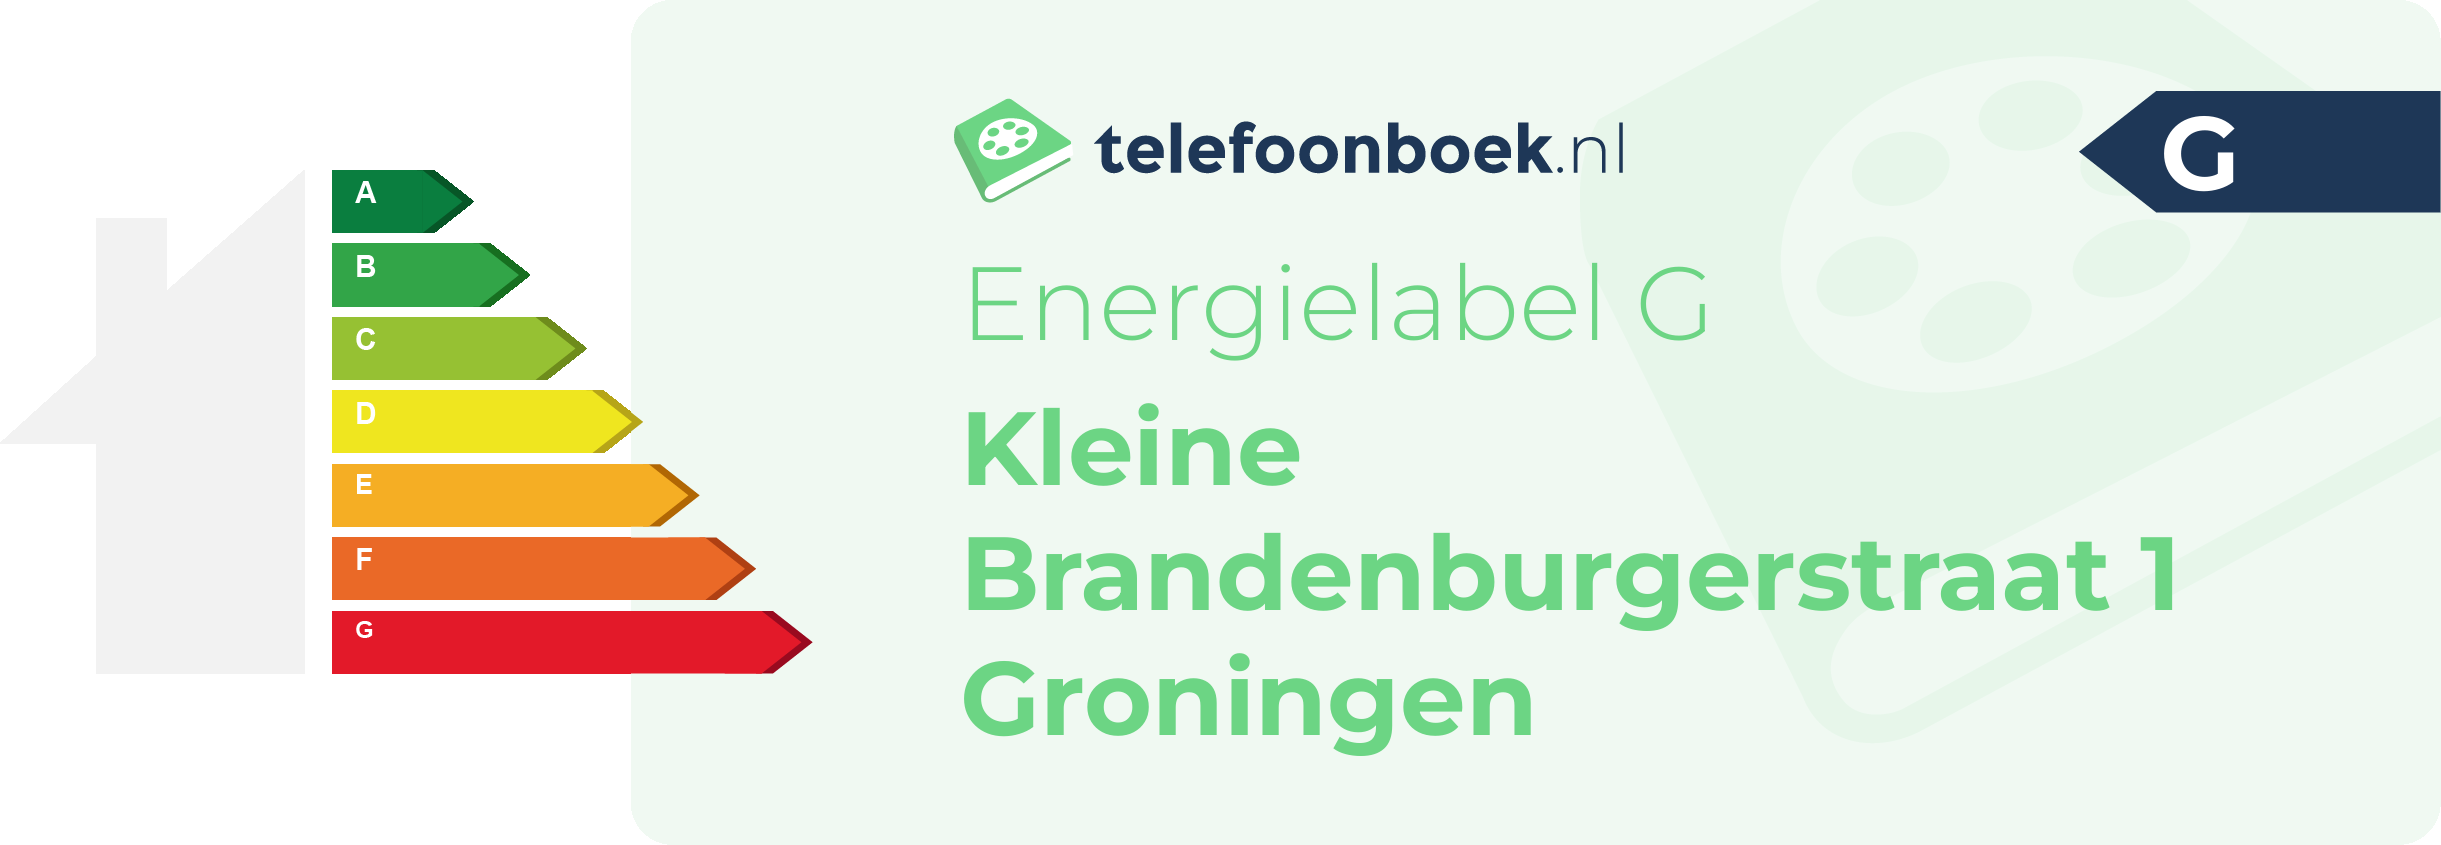 Energielabel Kleine Brandenburgerstraat 1 Groningen